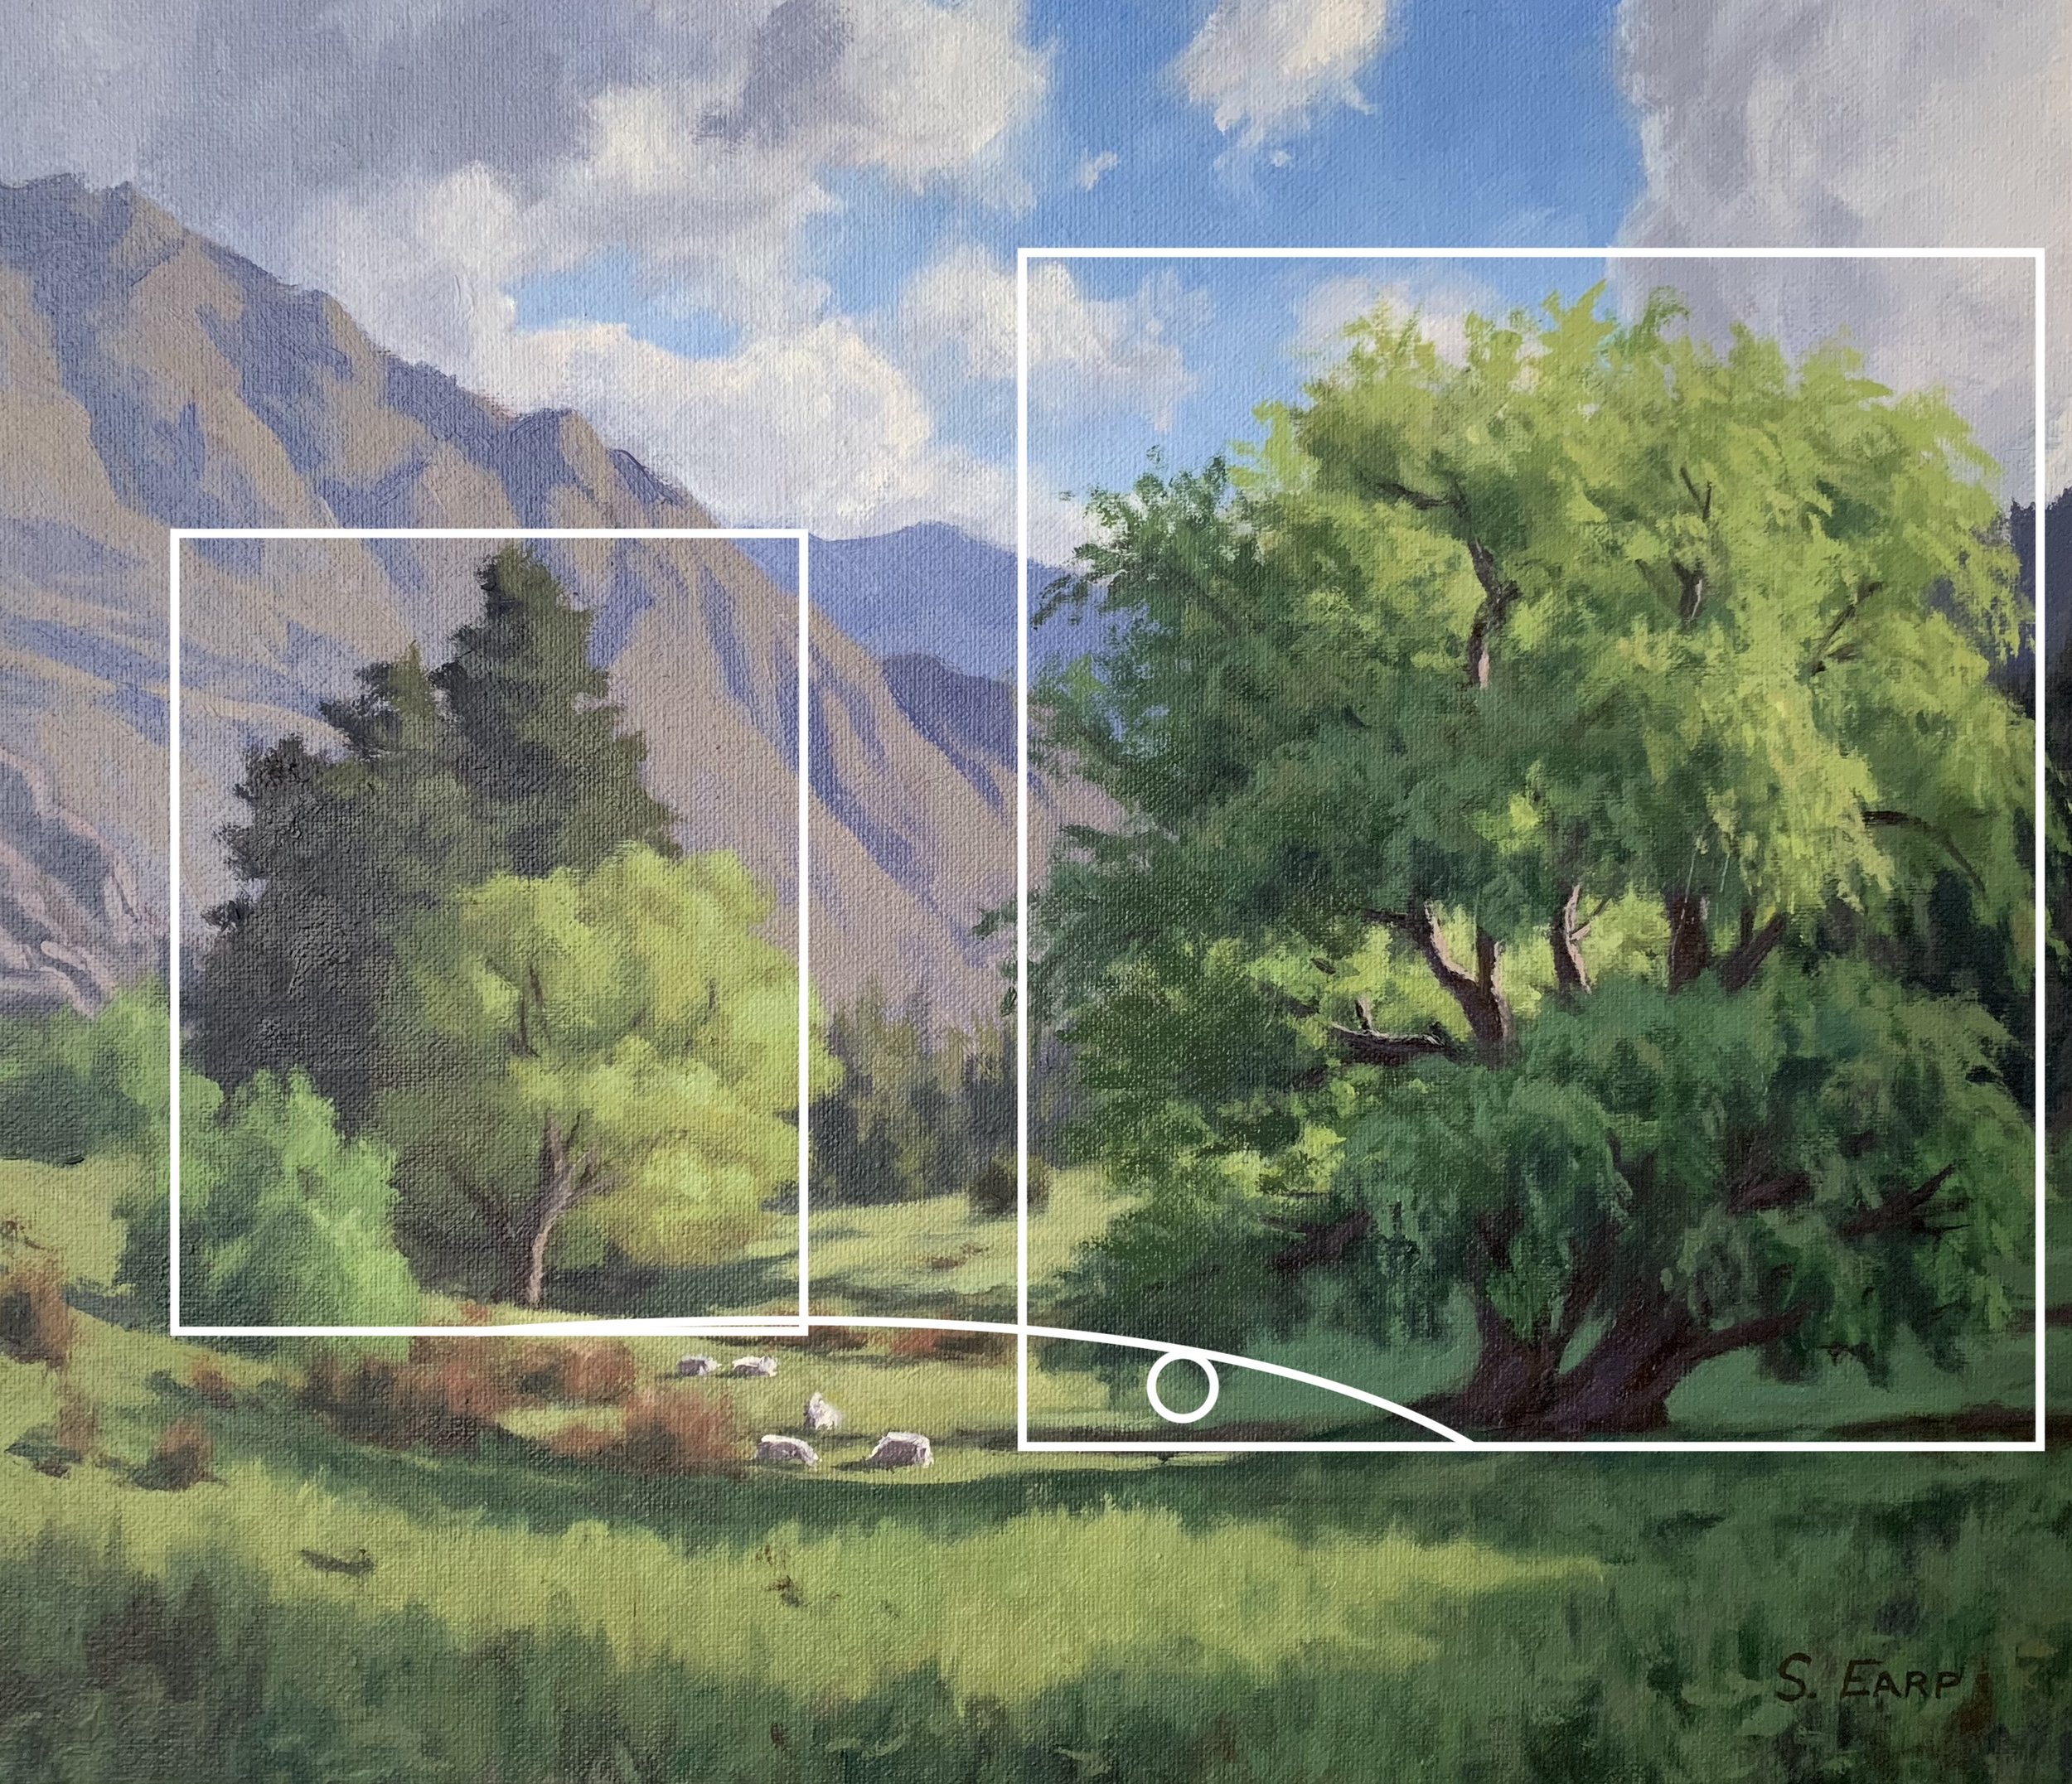 Willow Trees and Light - Samuel Earp - oil painting 1.jpg